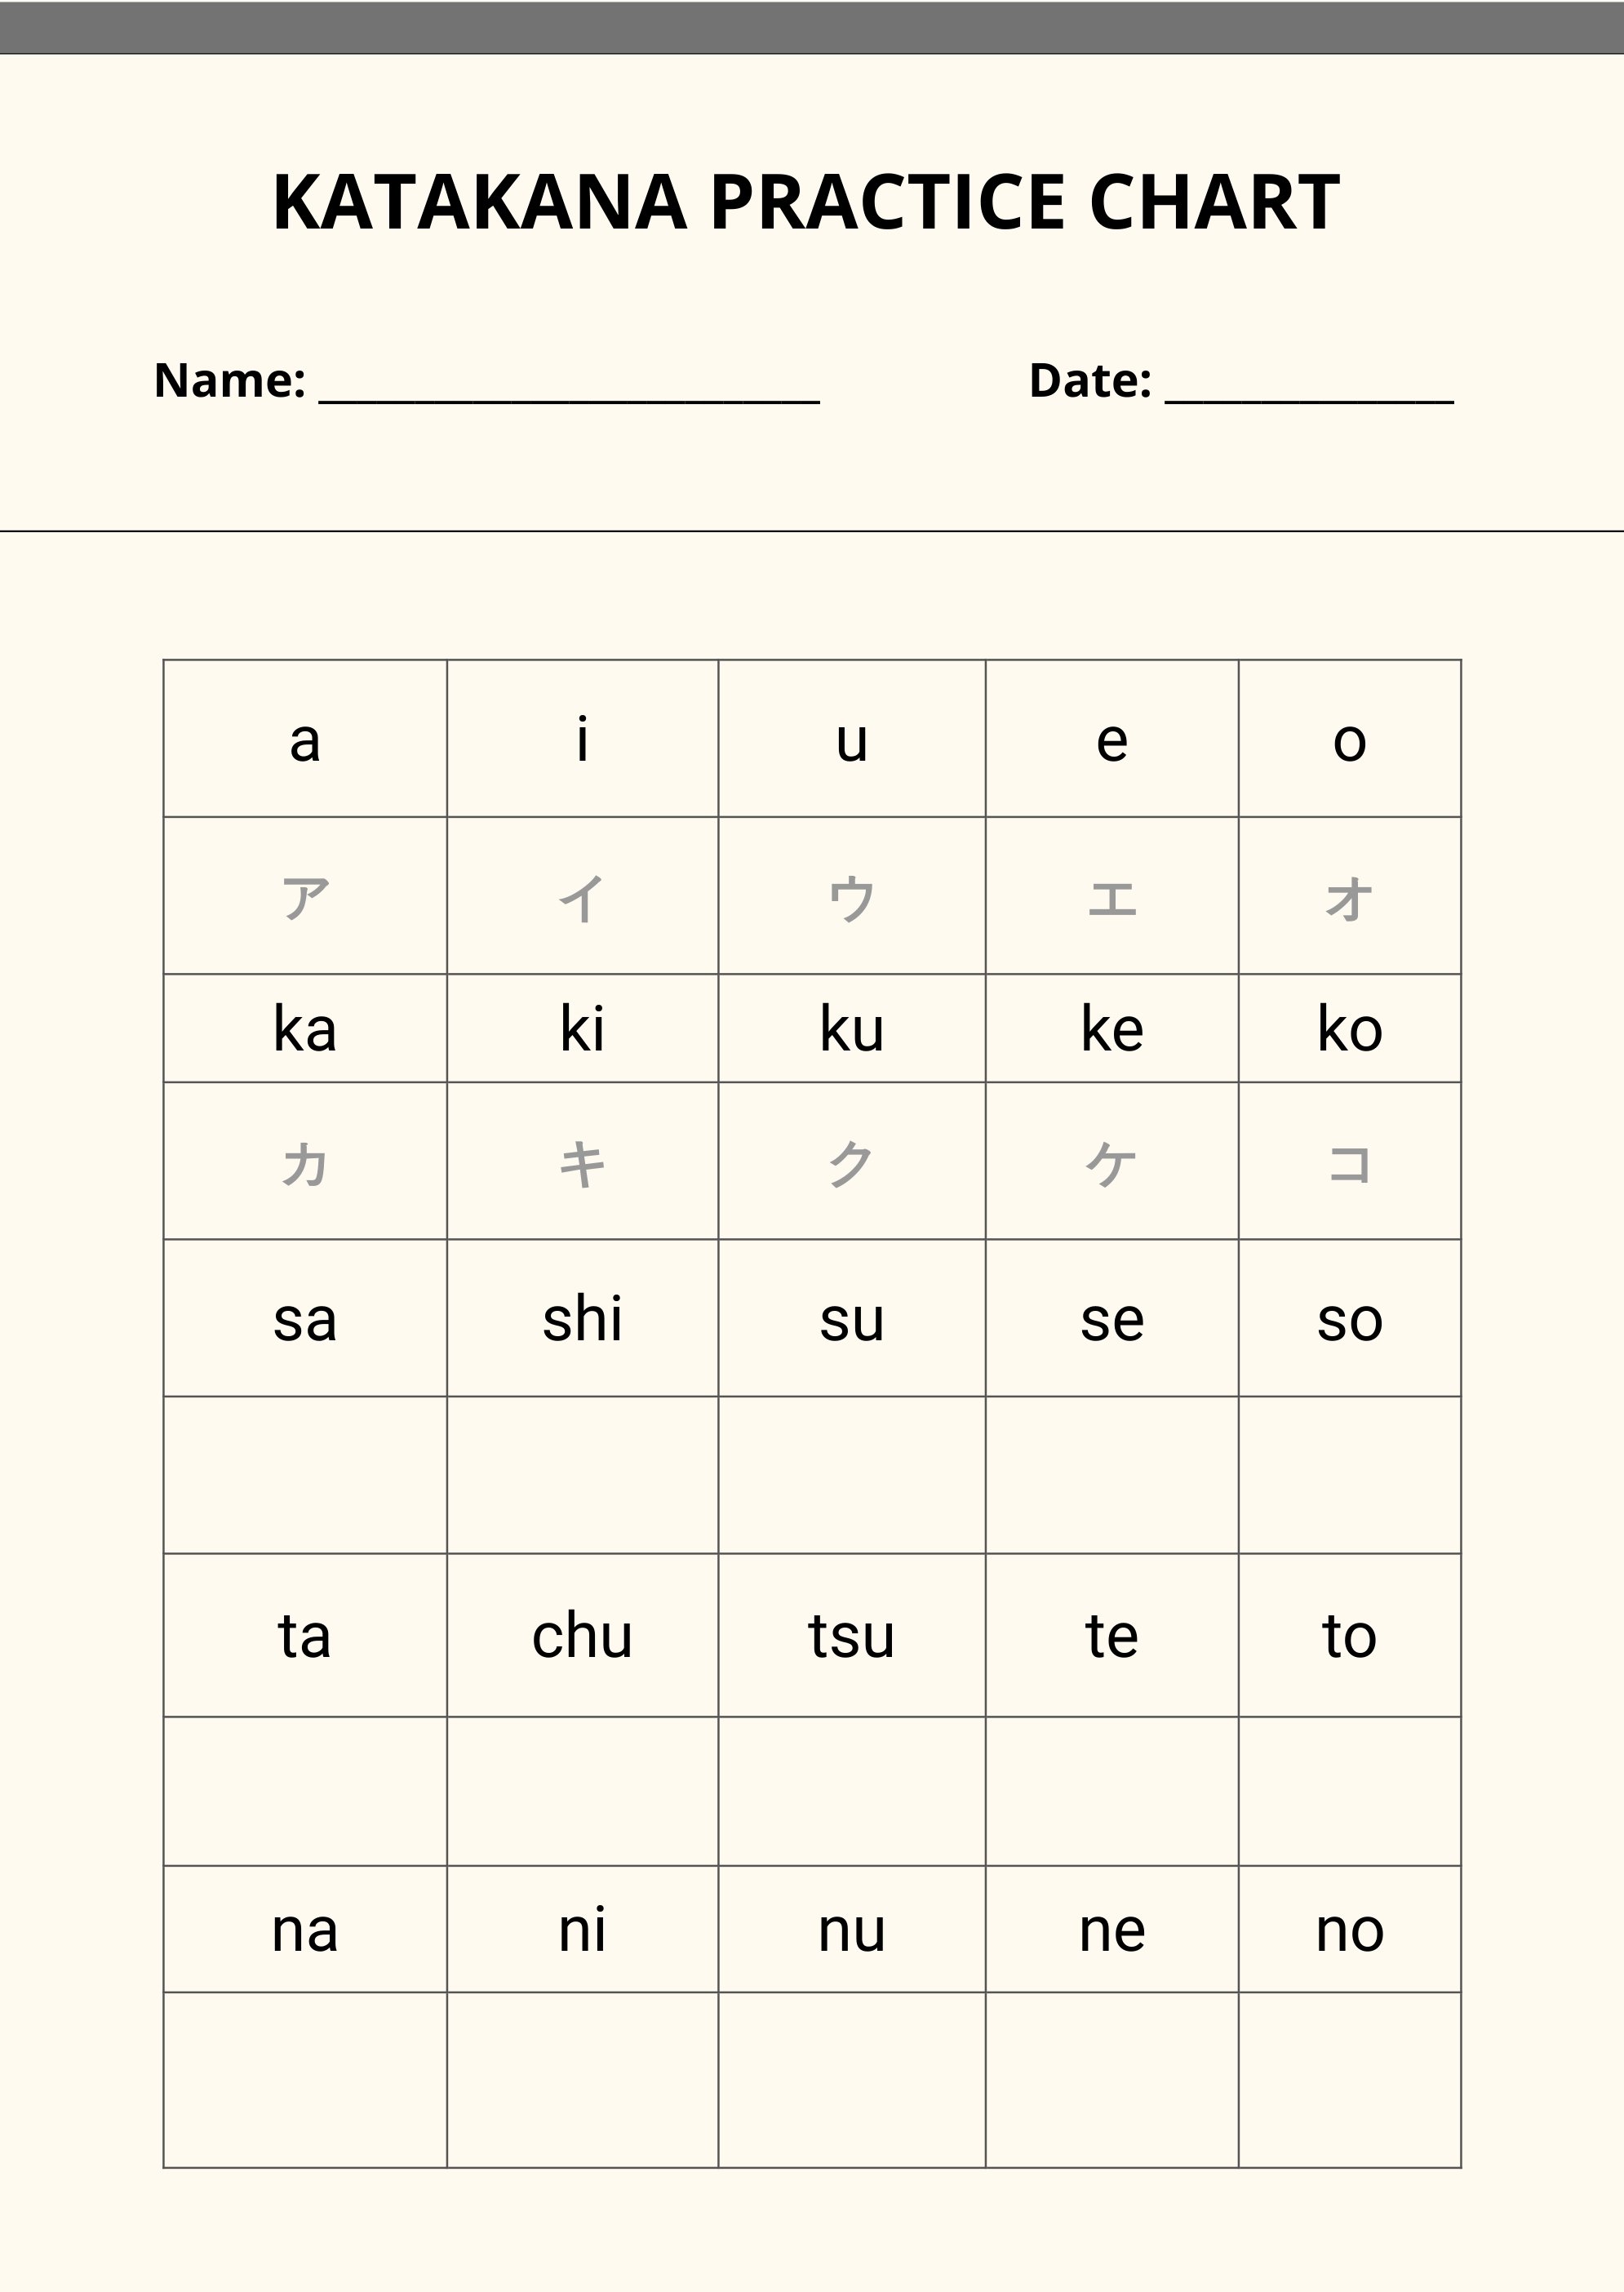 Katakana Practice Chart